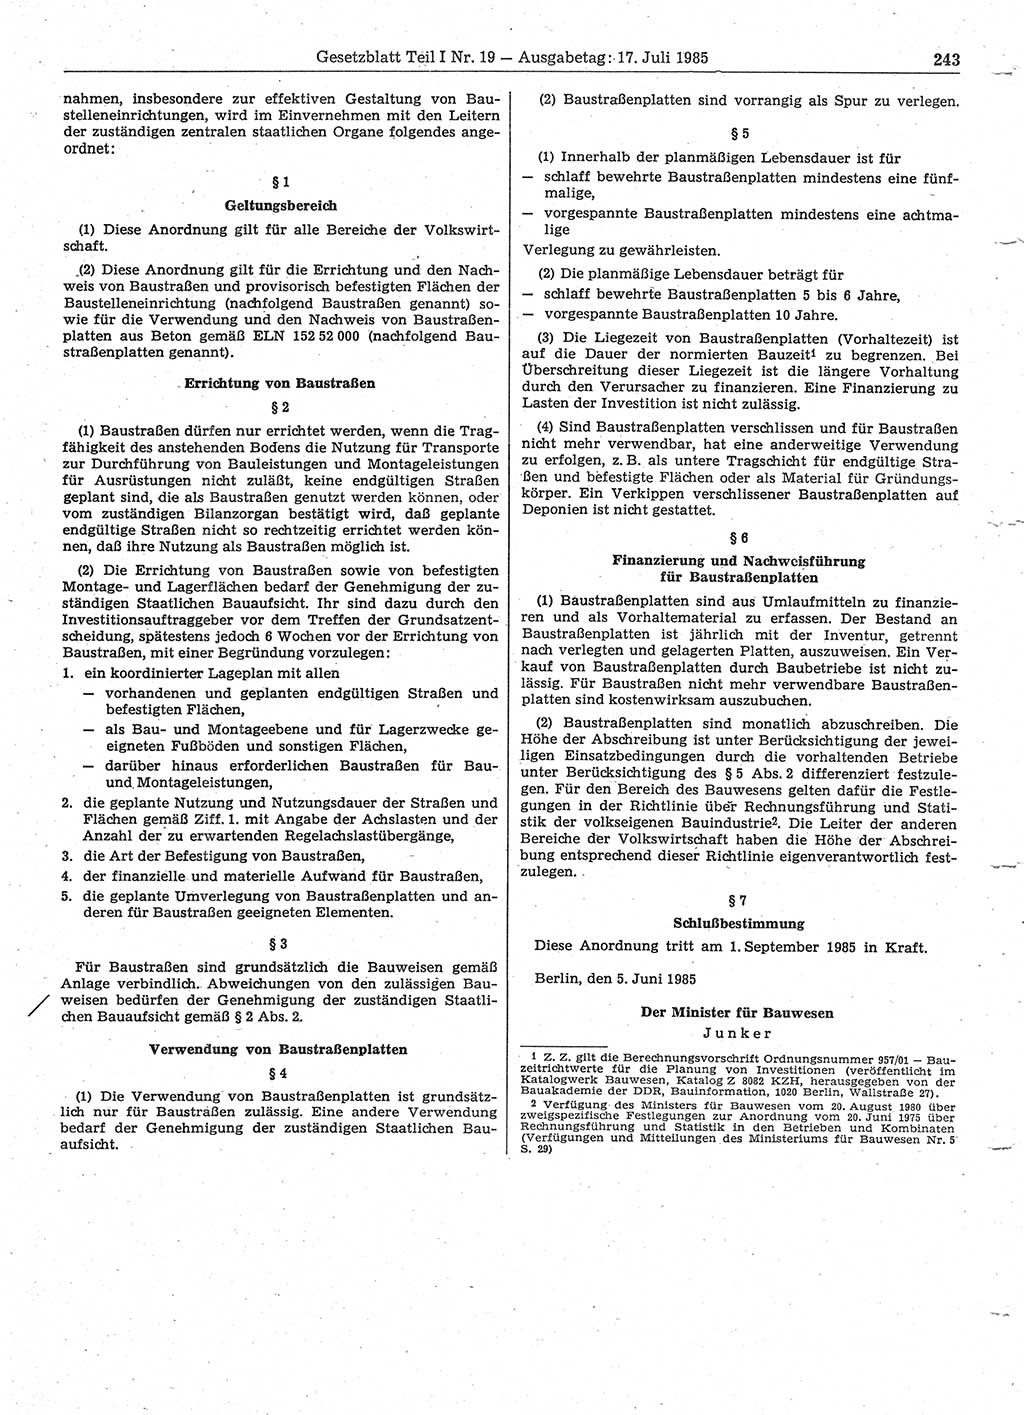 Gesetzblatt (GBl.) der Deutschen Demokratischen Republik (DDR) Teil Ⅰ 1985, Seite 243 (GBl. DDR Ⅰ 1985, S. 243)